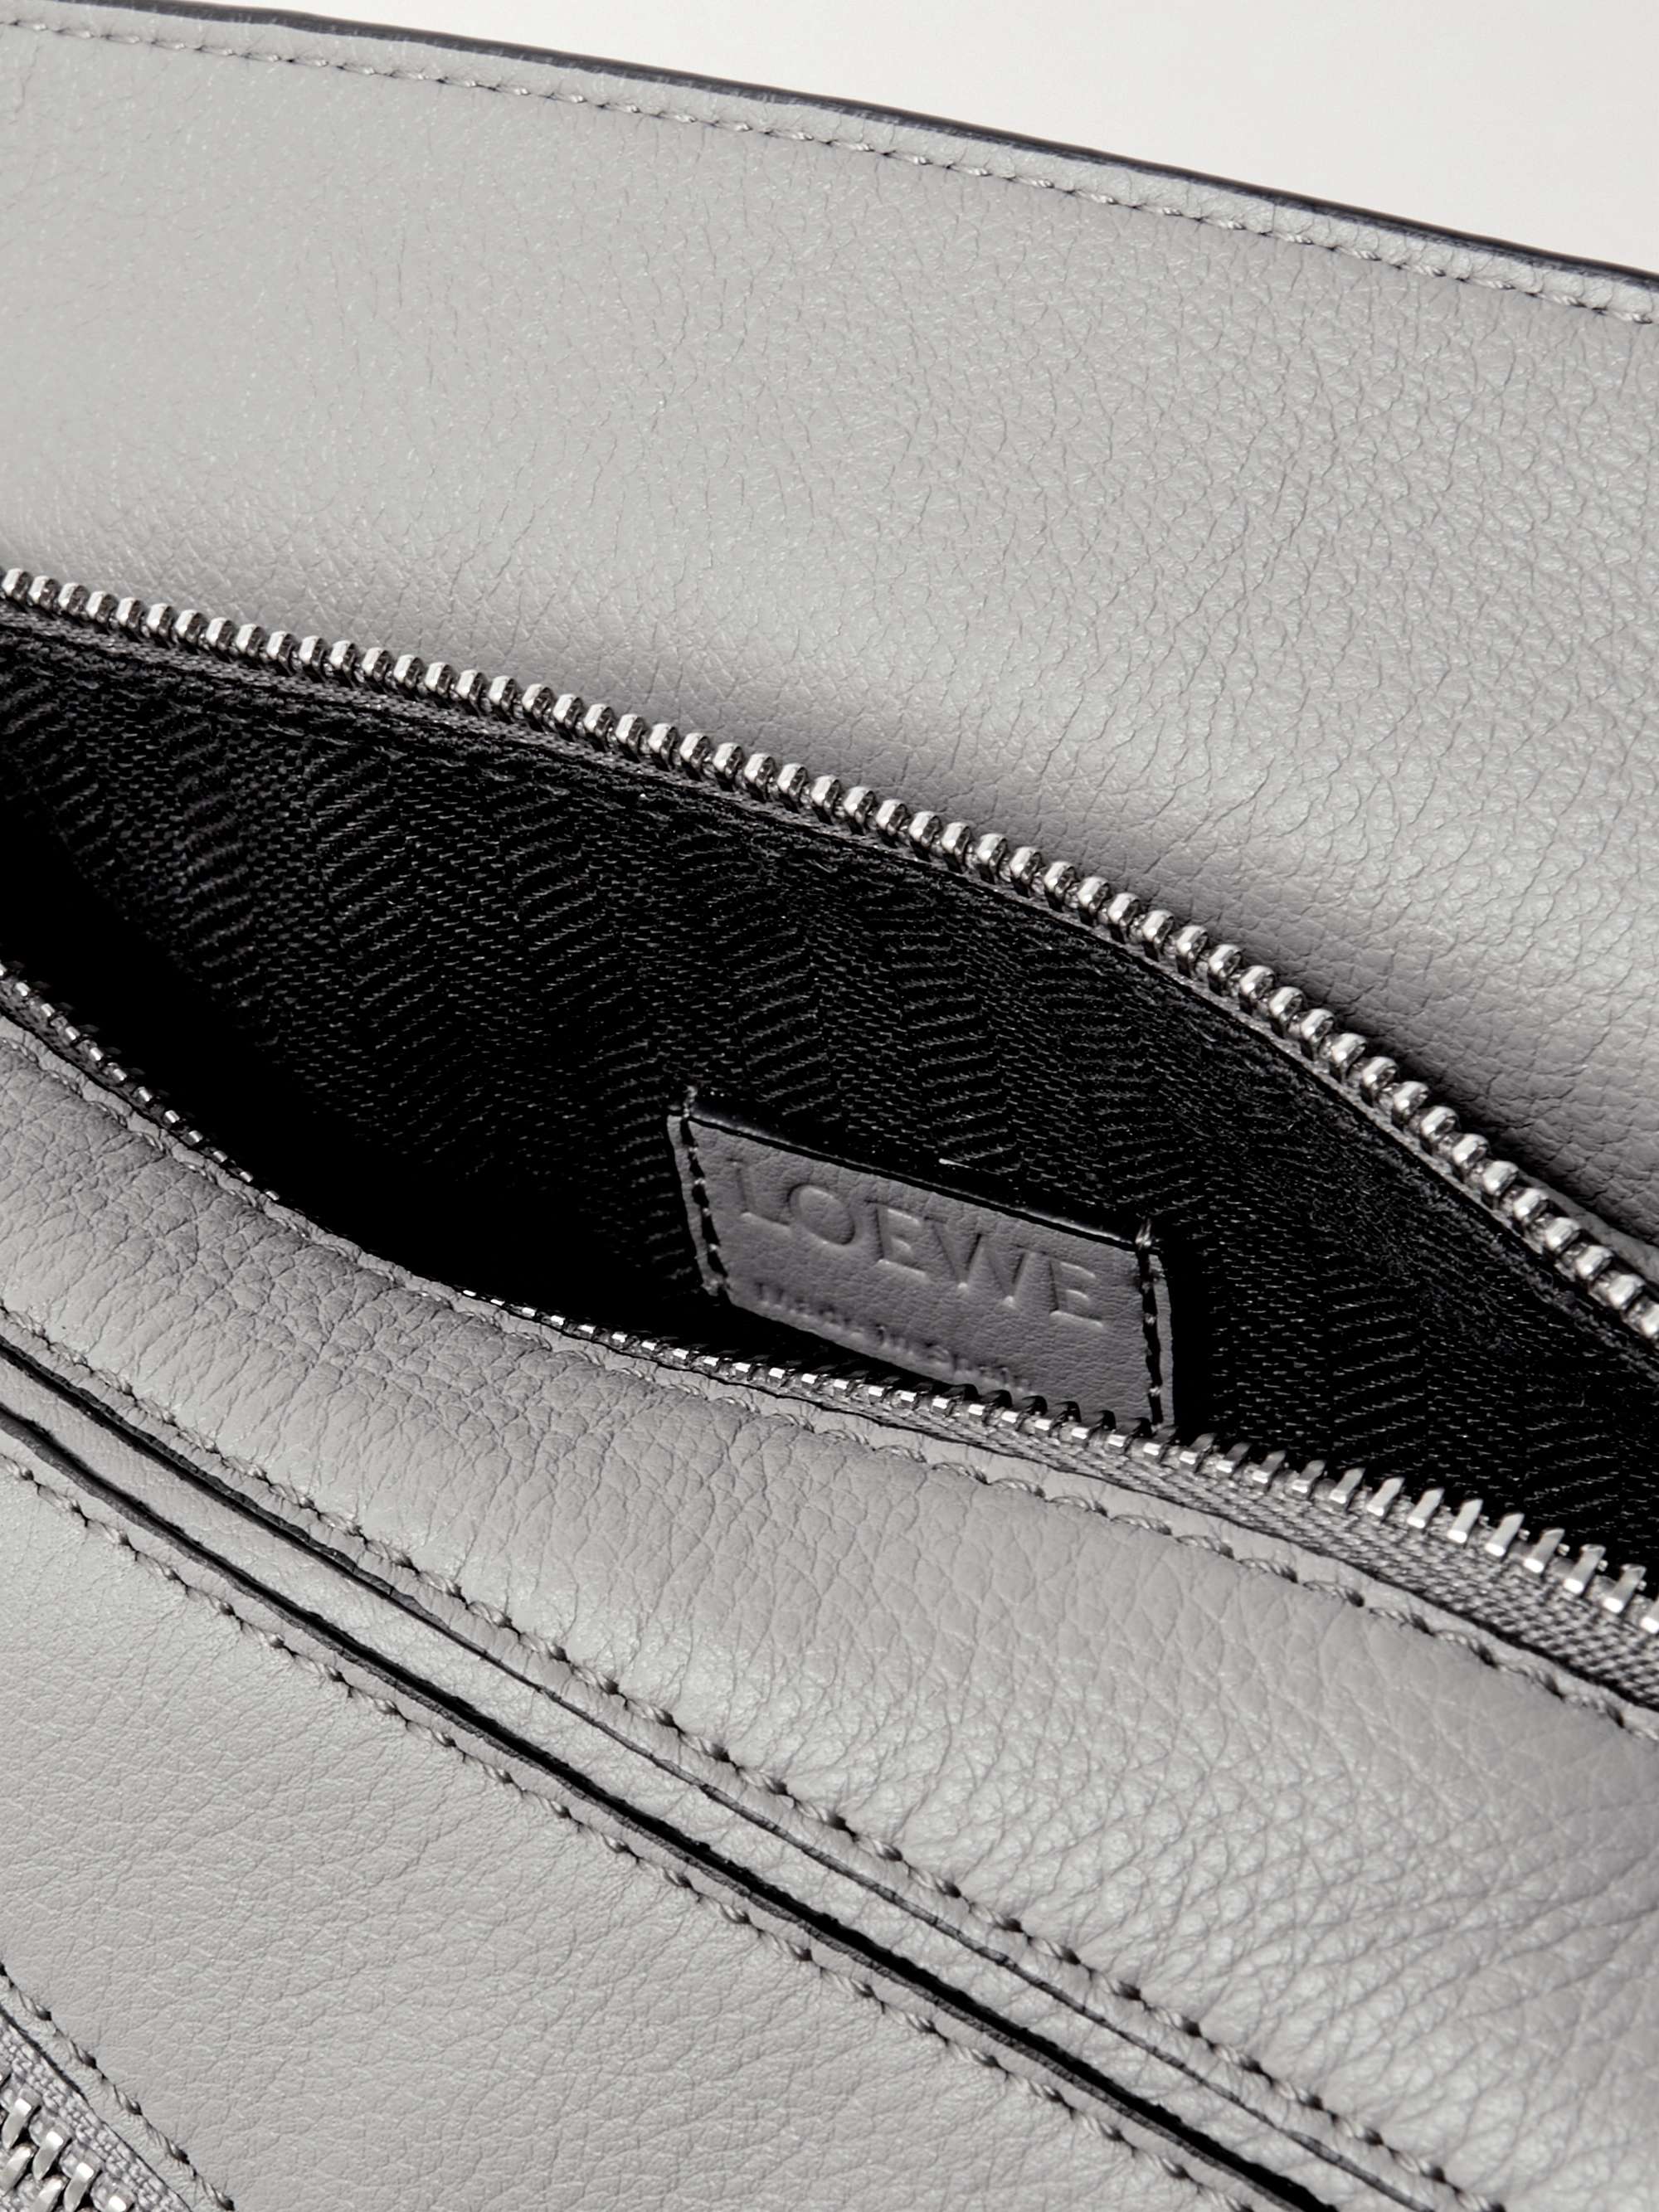 LOEWE Puzzle Mini Leather Belt Bag